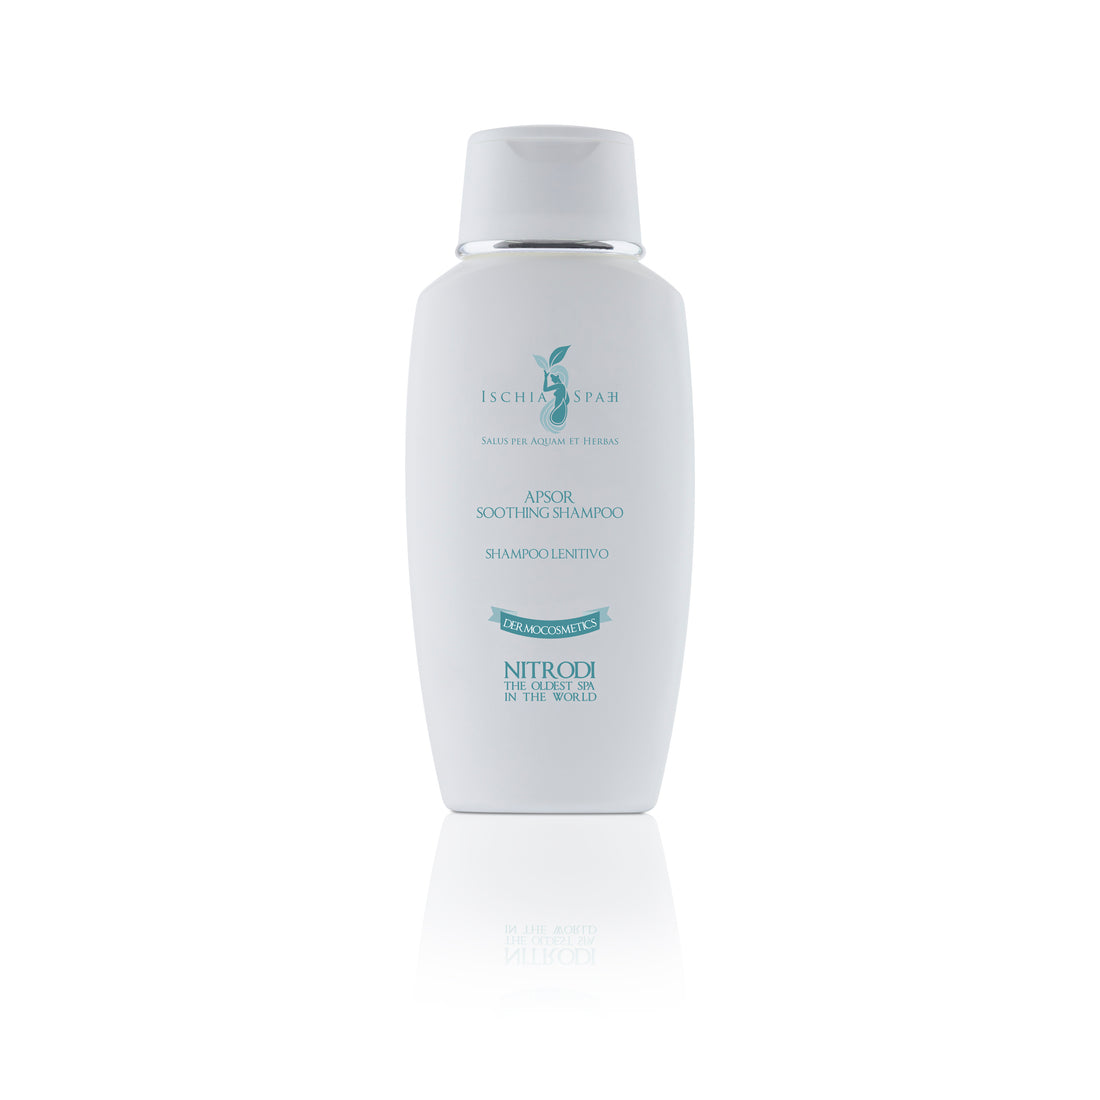 Shampoo lenitivo - Apsor | Ischia SPAEH